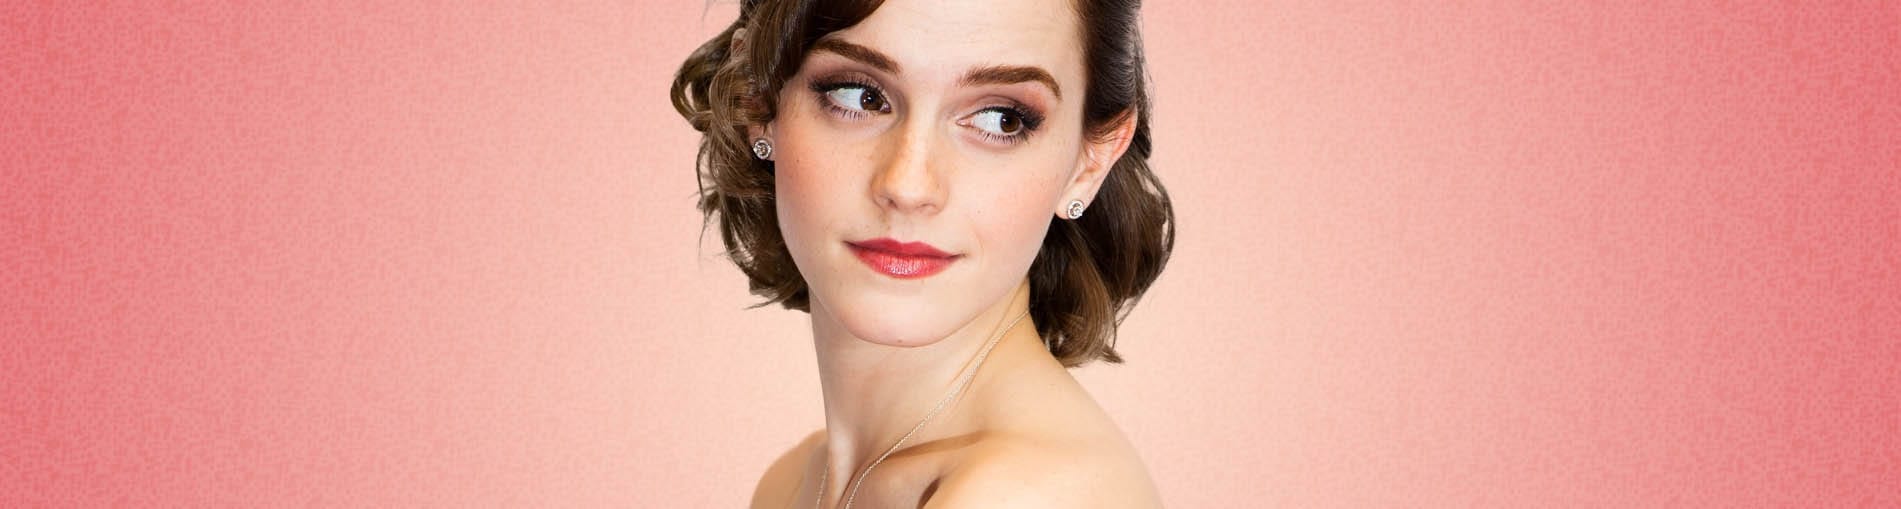 ¿Quién es Emma Watson? te contamos 7 curiosidades que probablemente no sabes sobre ella.